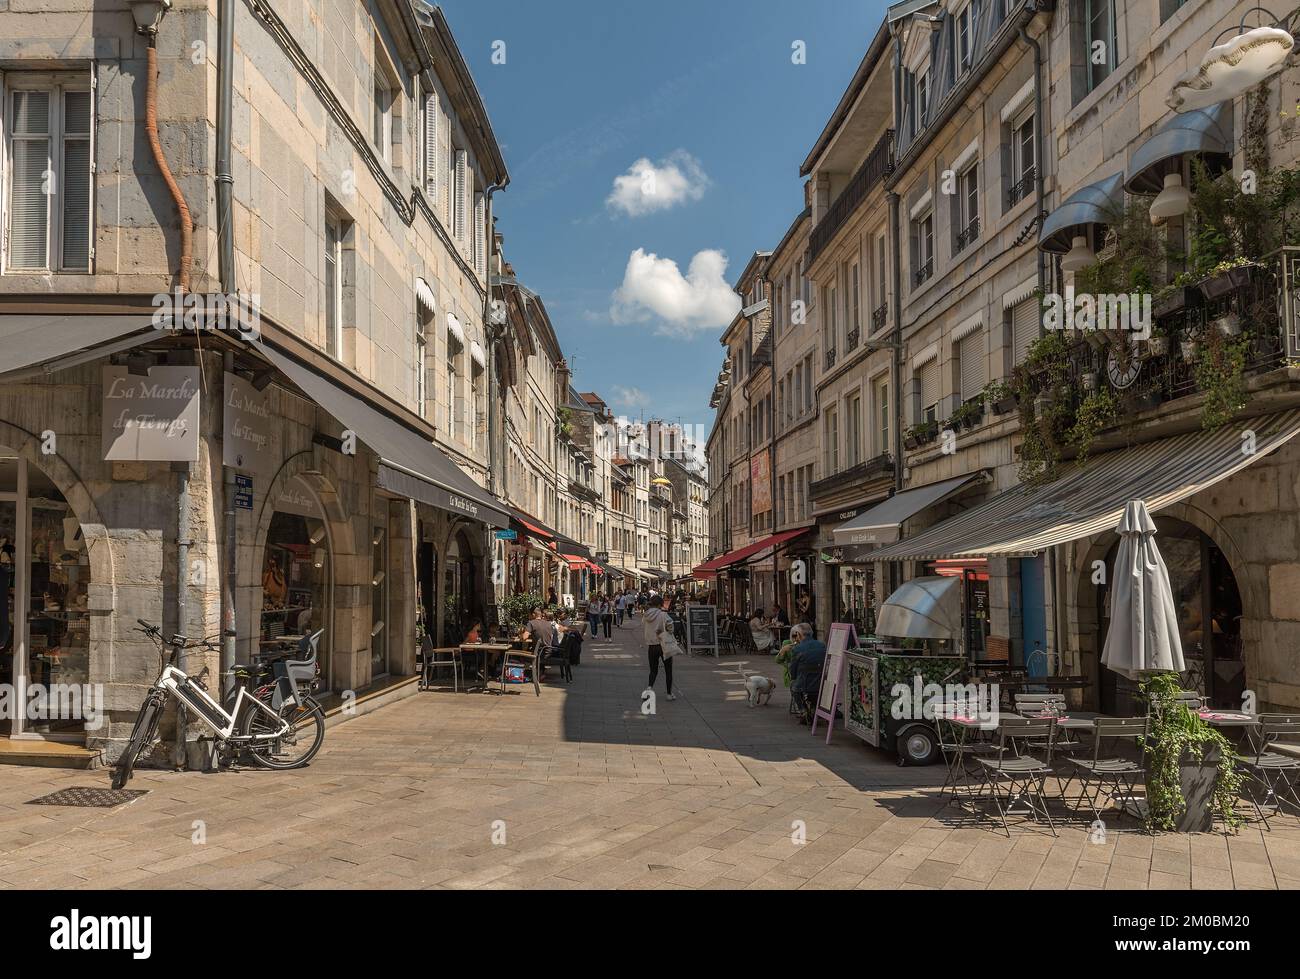 Vue de personnes non identifiées dans une rue de Besançon, France Banque D'Images